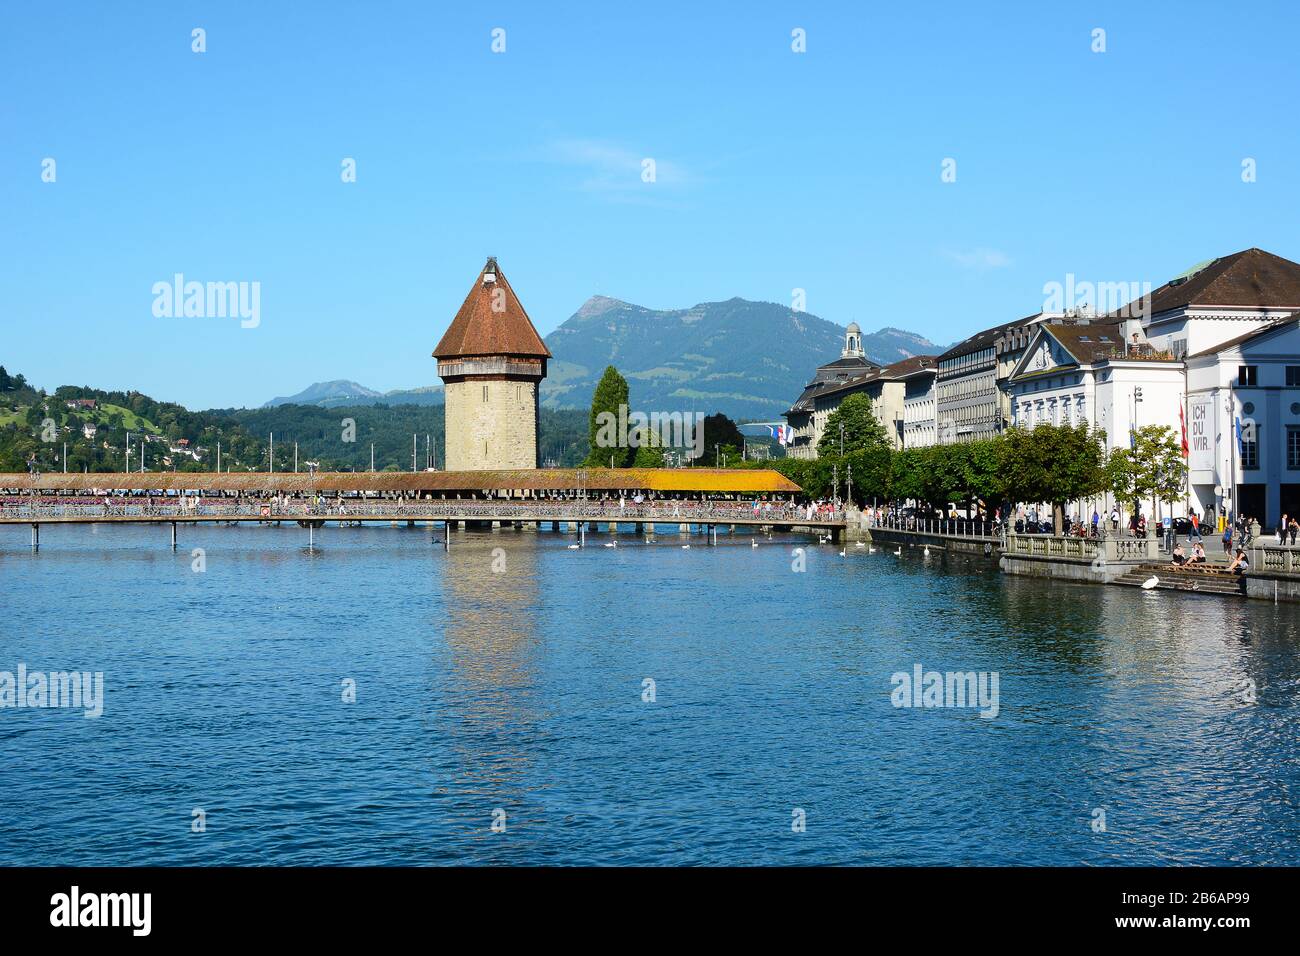 Luzerne, SCHWEIZ - 3. JULI 2014: Kapellenbrücke am Fluss Reuss. Berge, Hotels und der Bahnhof stehen im Hintergrund. Stockfoto